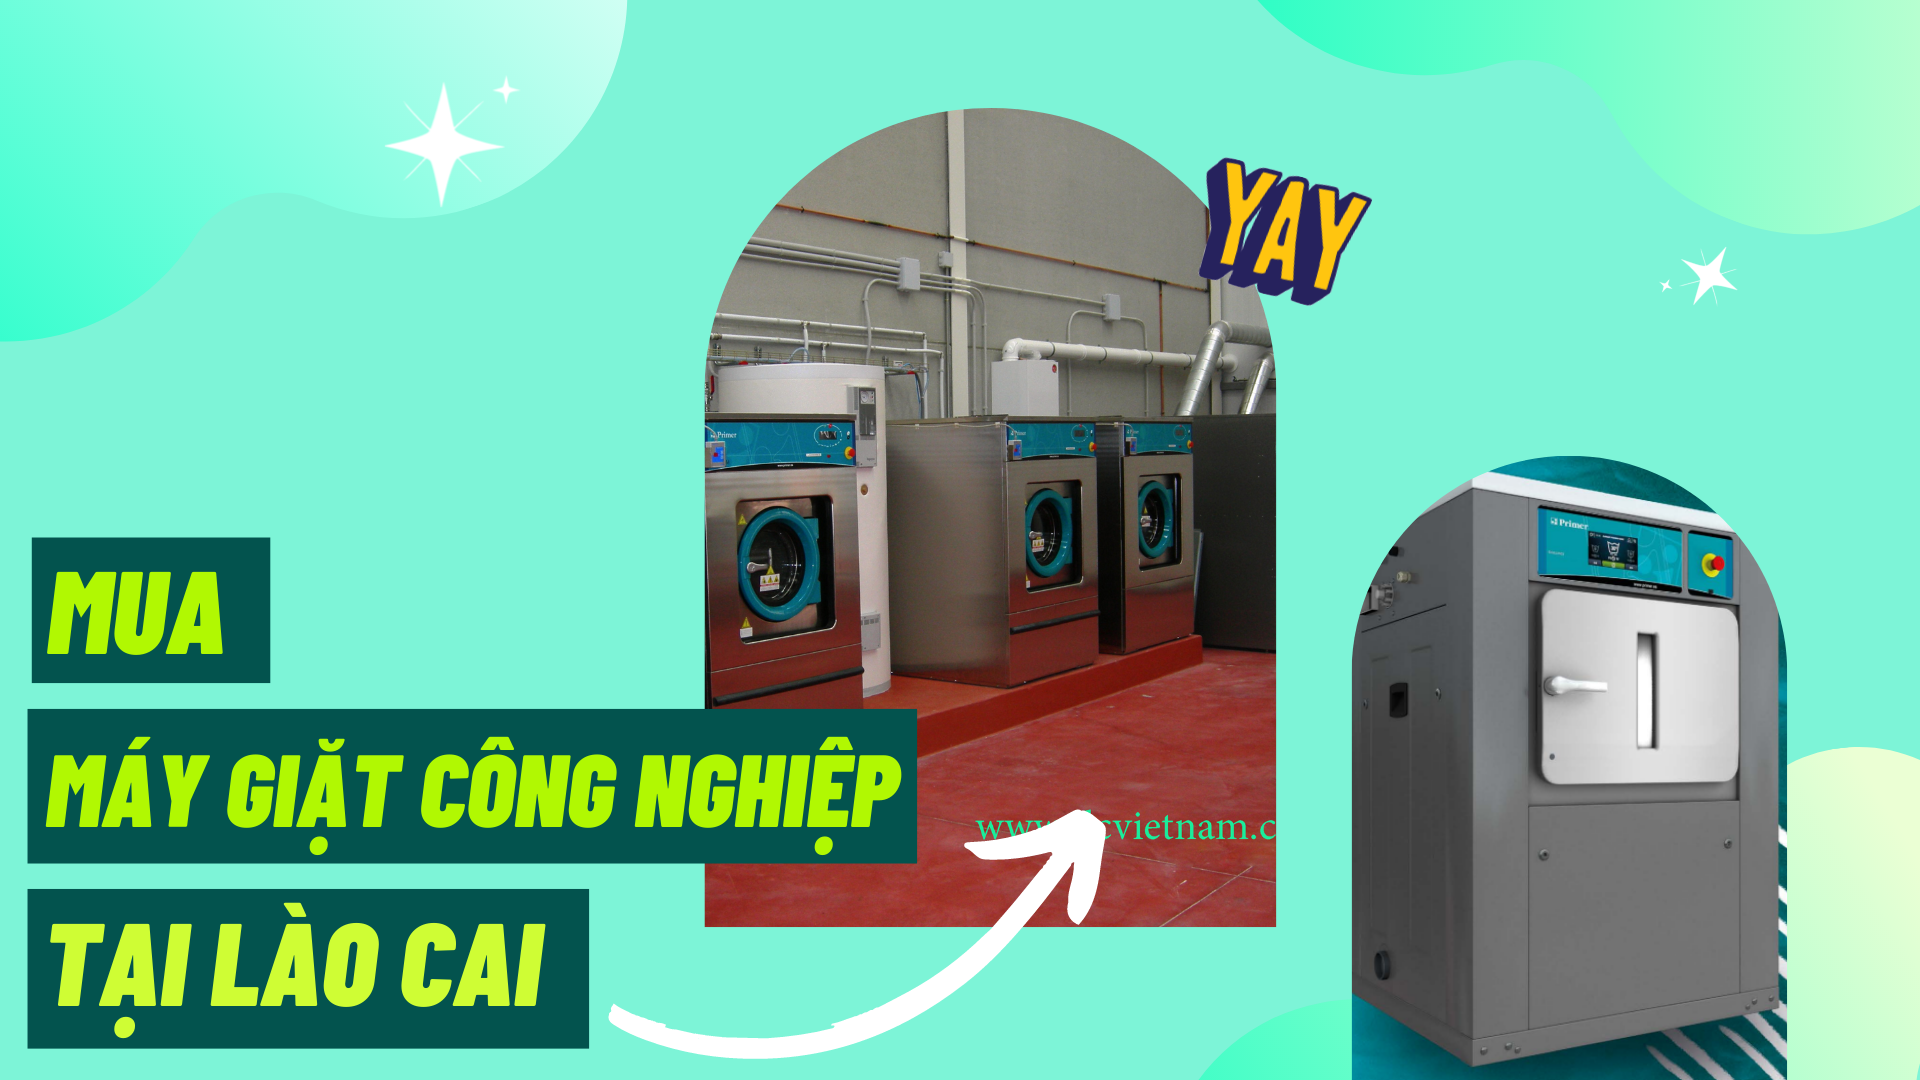 Địa chỉ uy tín cung cấp máy giặt công nghiệp tại Lào Cai